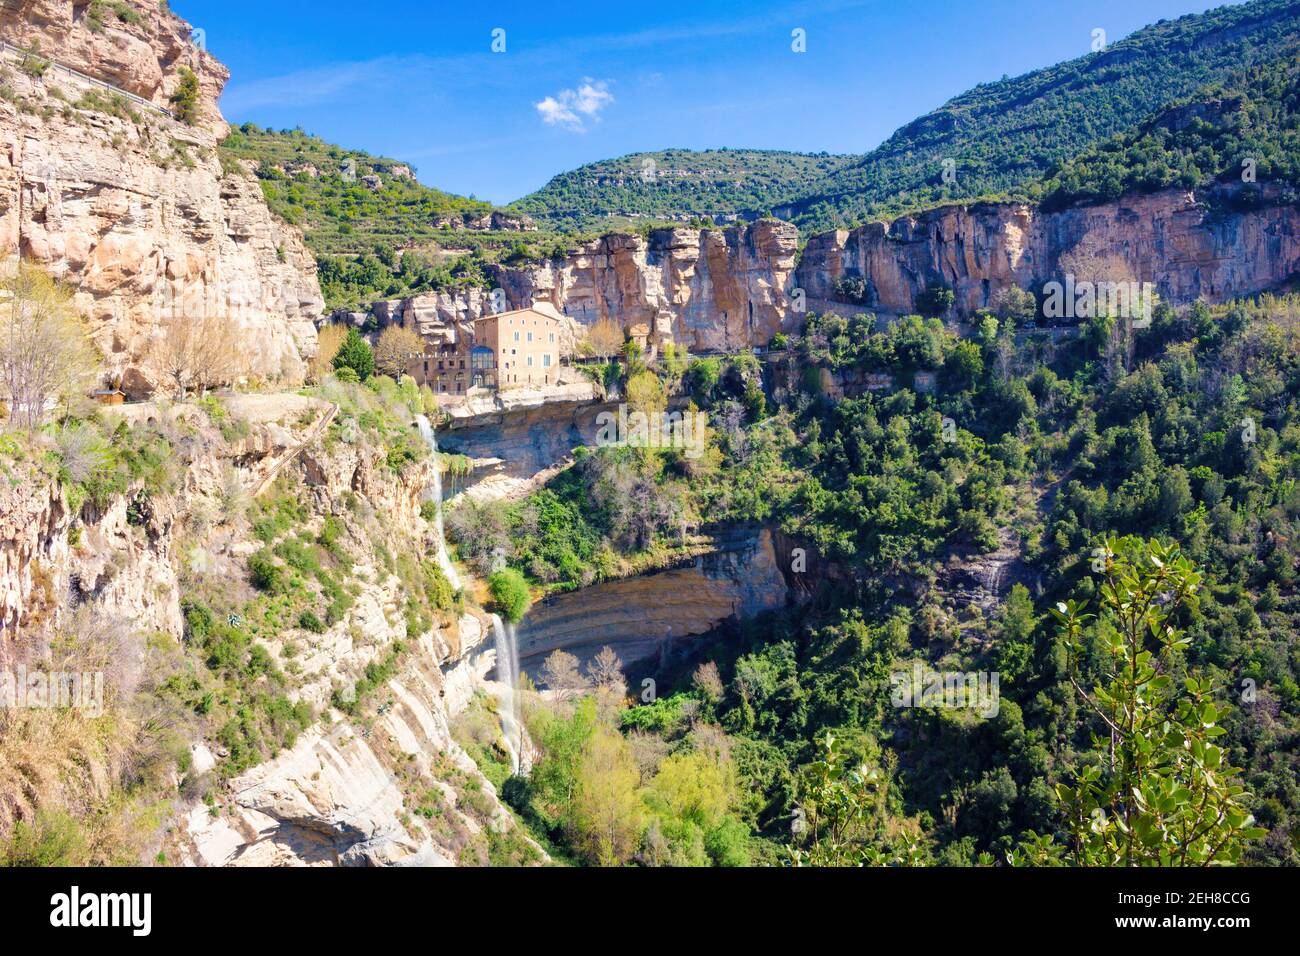 Blick auf Abadia auf einem Felsvorsprung des Naturraums Sant Miguel del Fai, Katalonien, Spanien Stockfoto